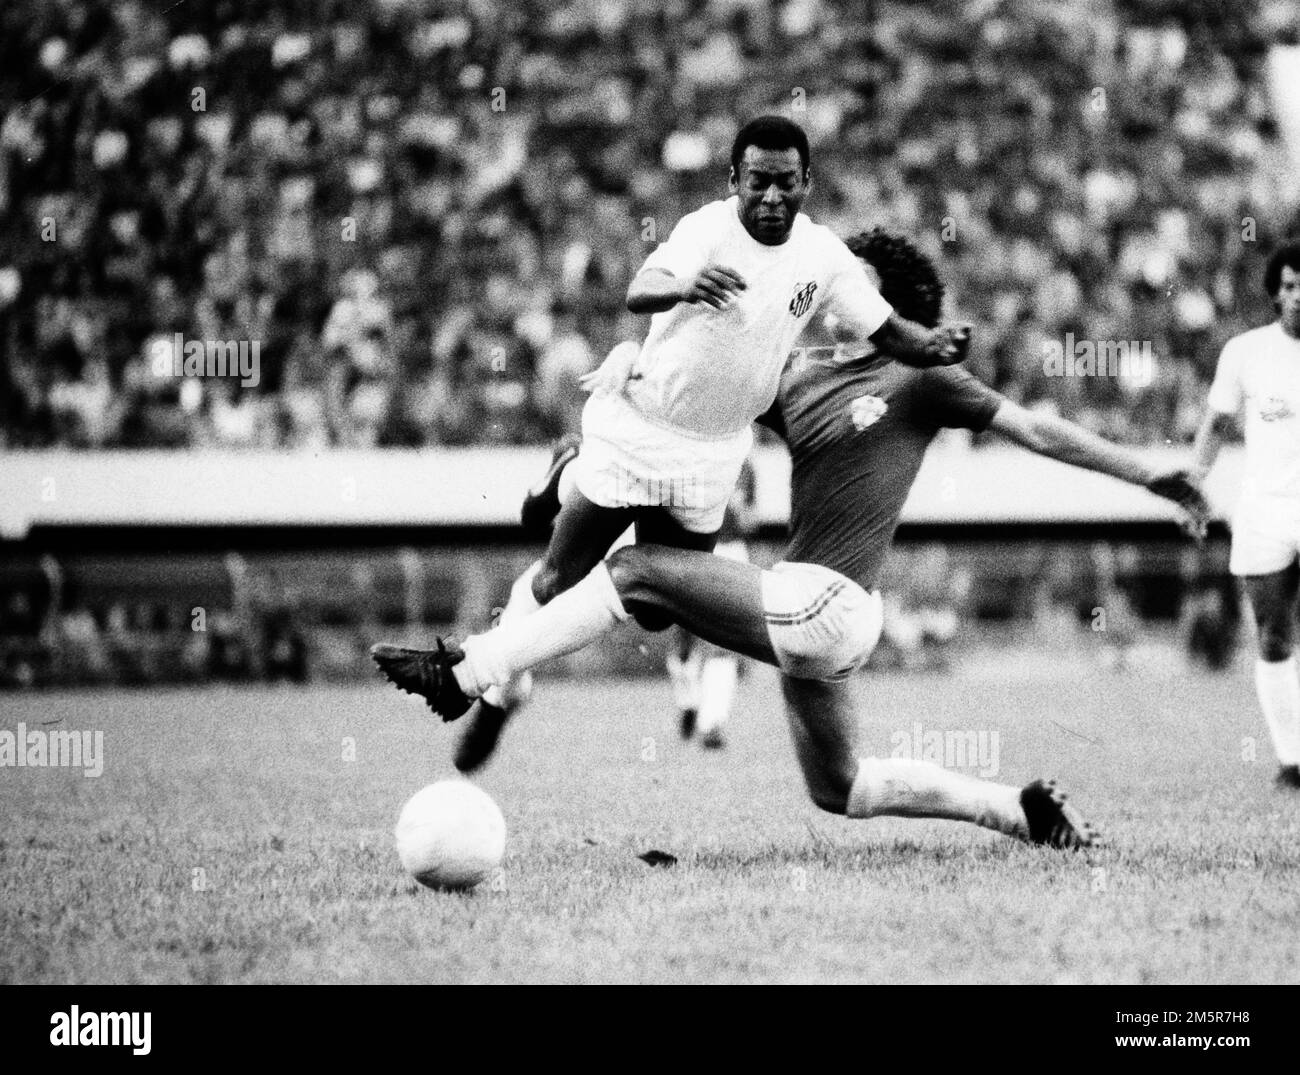 4 marzo 1974 - Santos, Brasile - il calciatore brasiliano EDSON NASCIMENTO 'PELE' è scattato da un avversario mentre va dopo la palla durante una partita di calcio. (Credit Image: © Keystone Press Agency/ZUMA Press Wire) Foto Stock